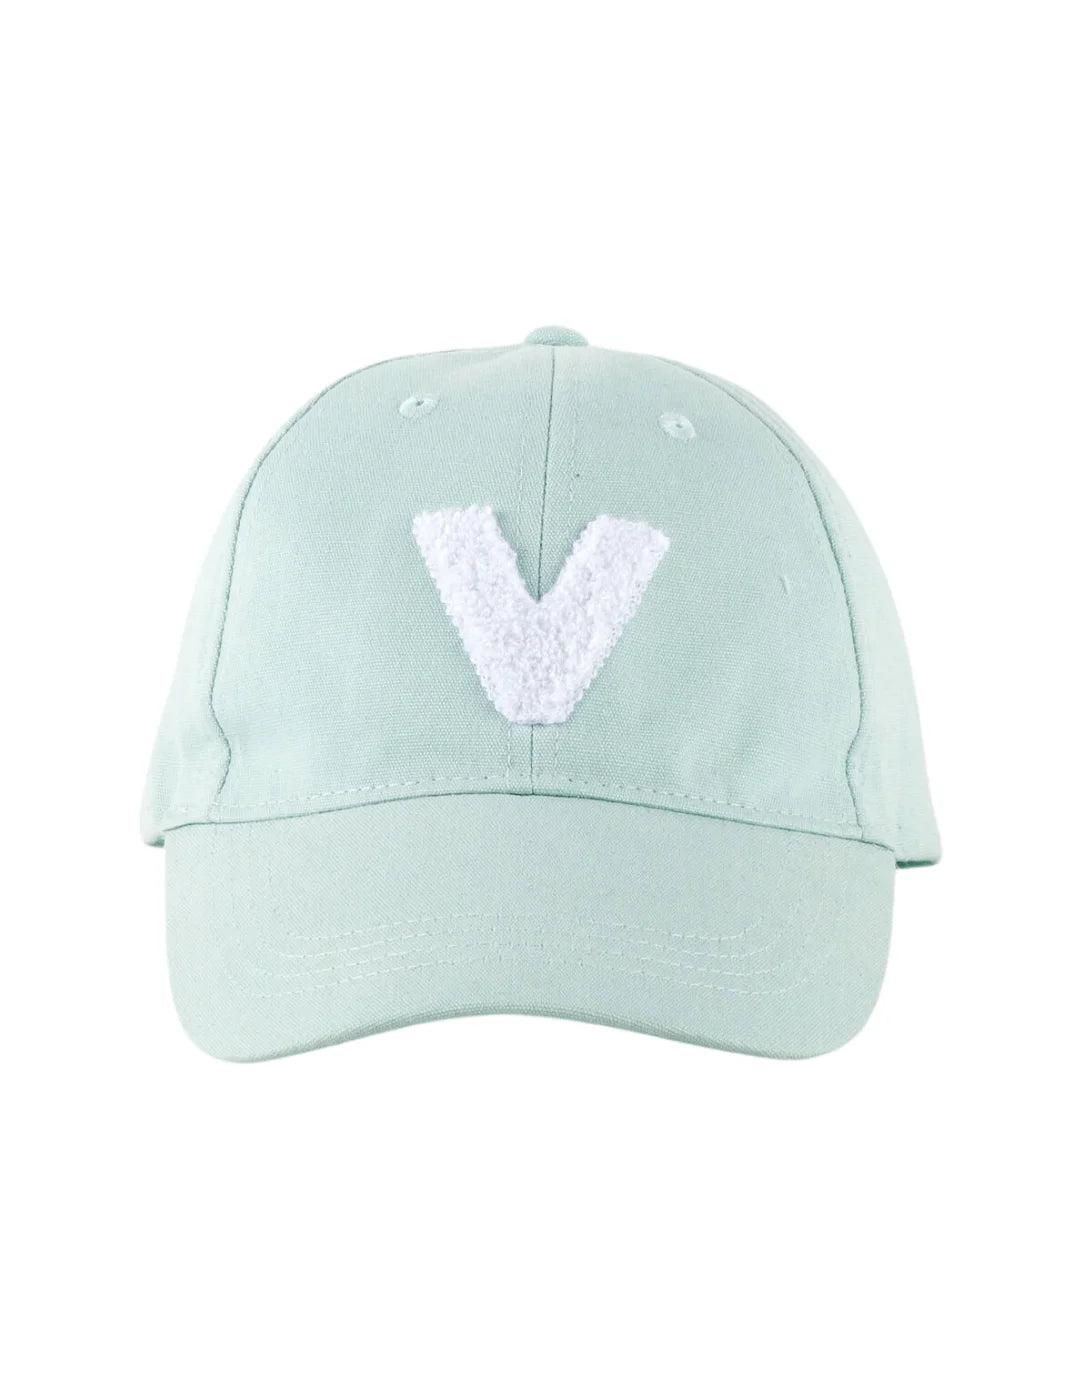 Gorra de Mujer Victoria V Verde Melón | Bicos de Fío